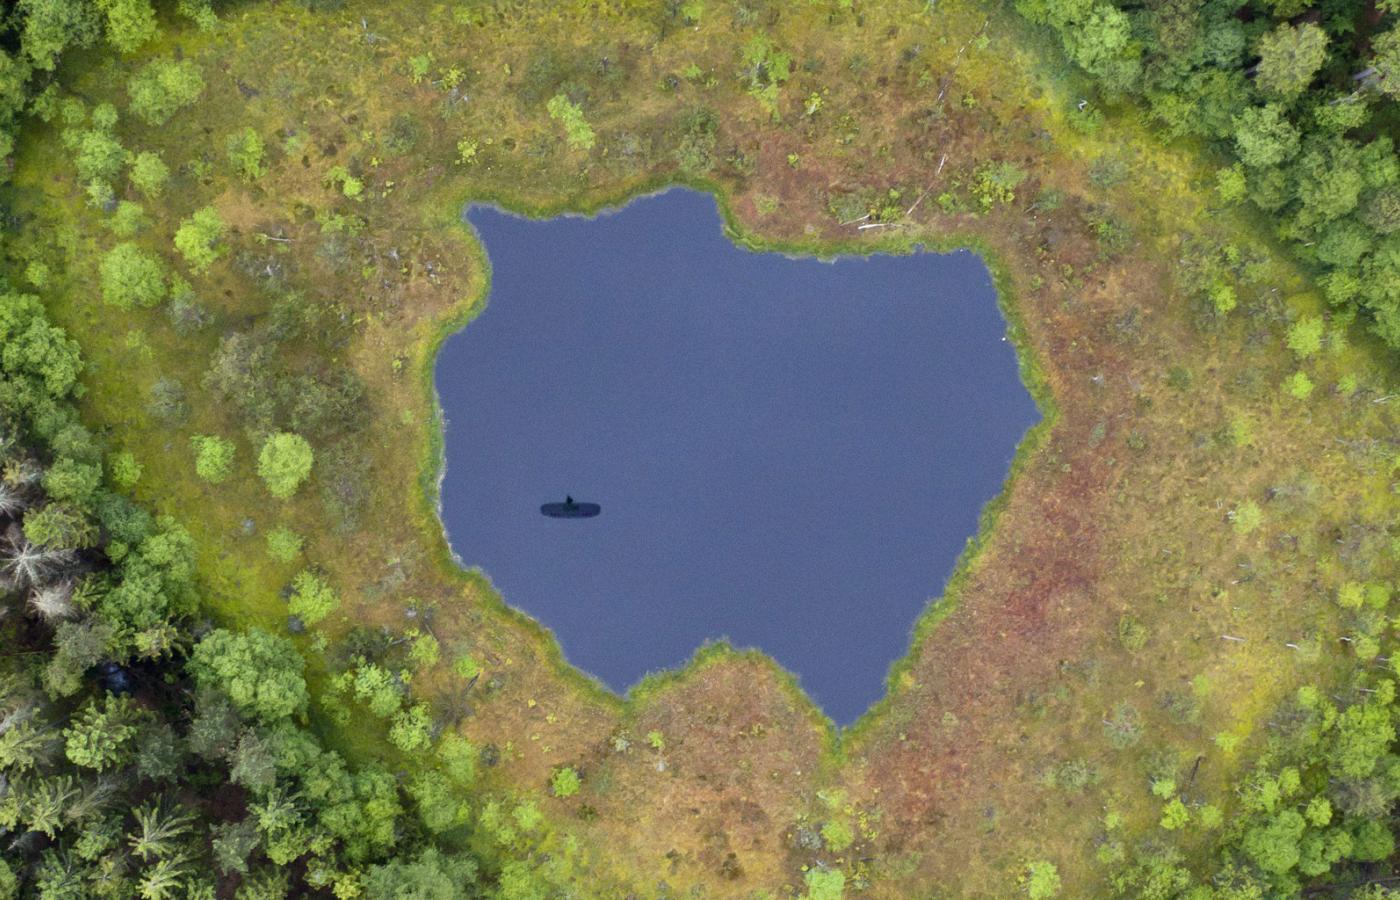 Jeziorko w kształcie Polski w Trójmiejskim Parku Krajobrazowym niedaleko Gdyni.